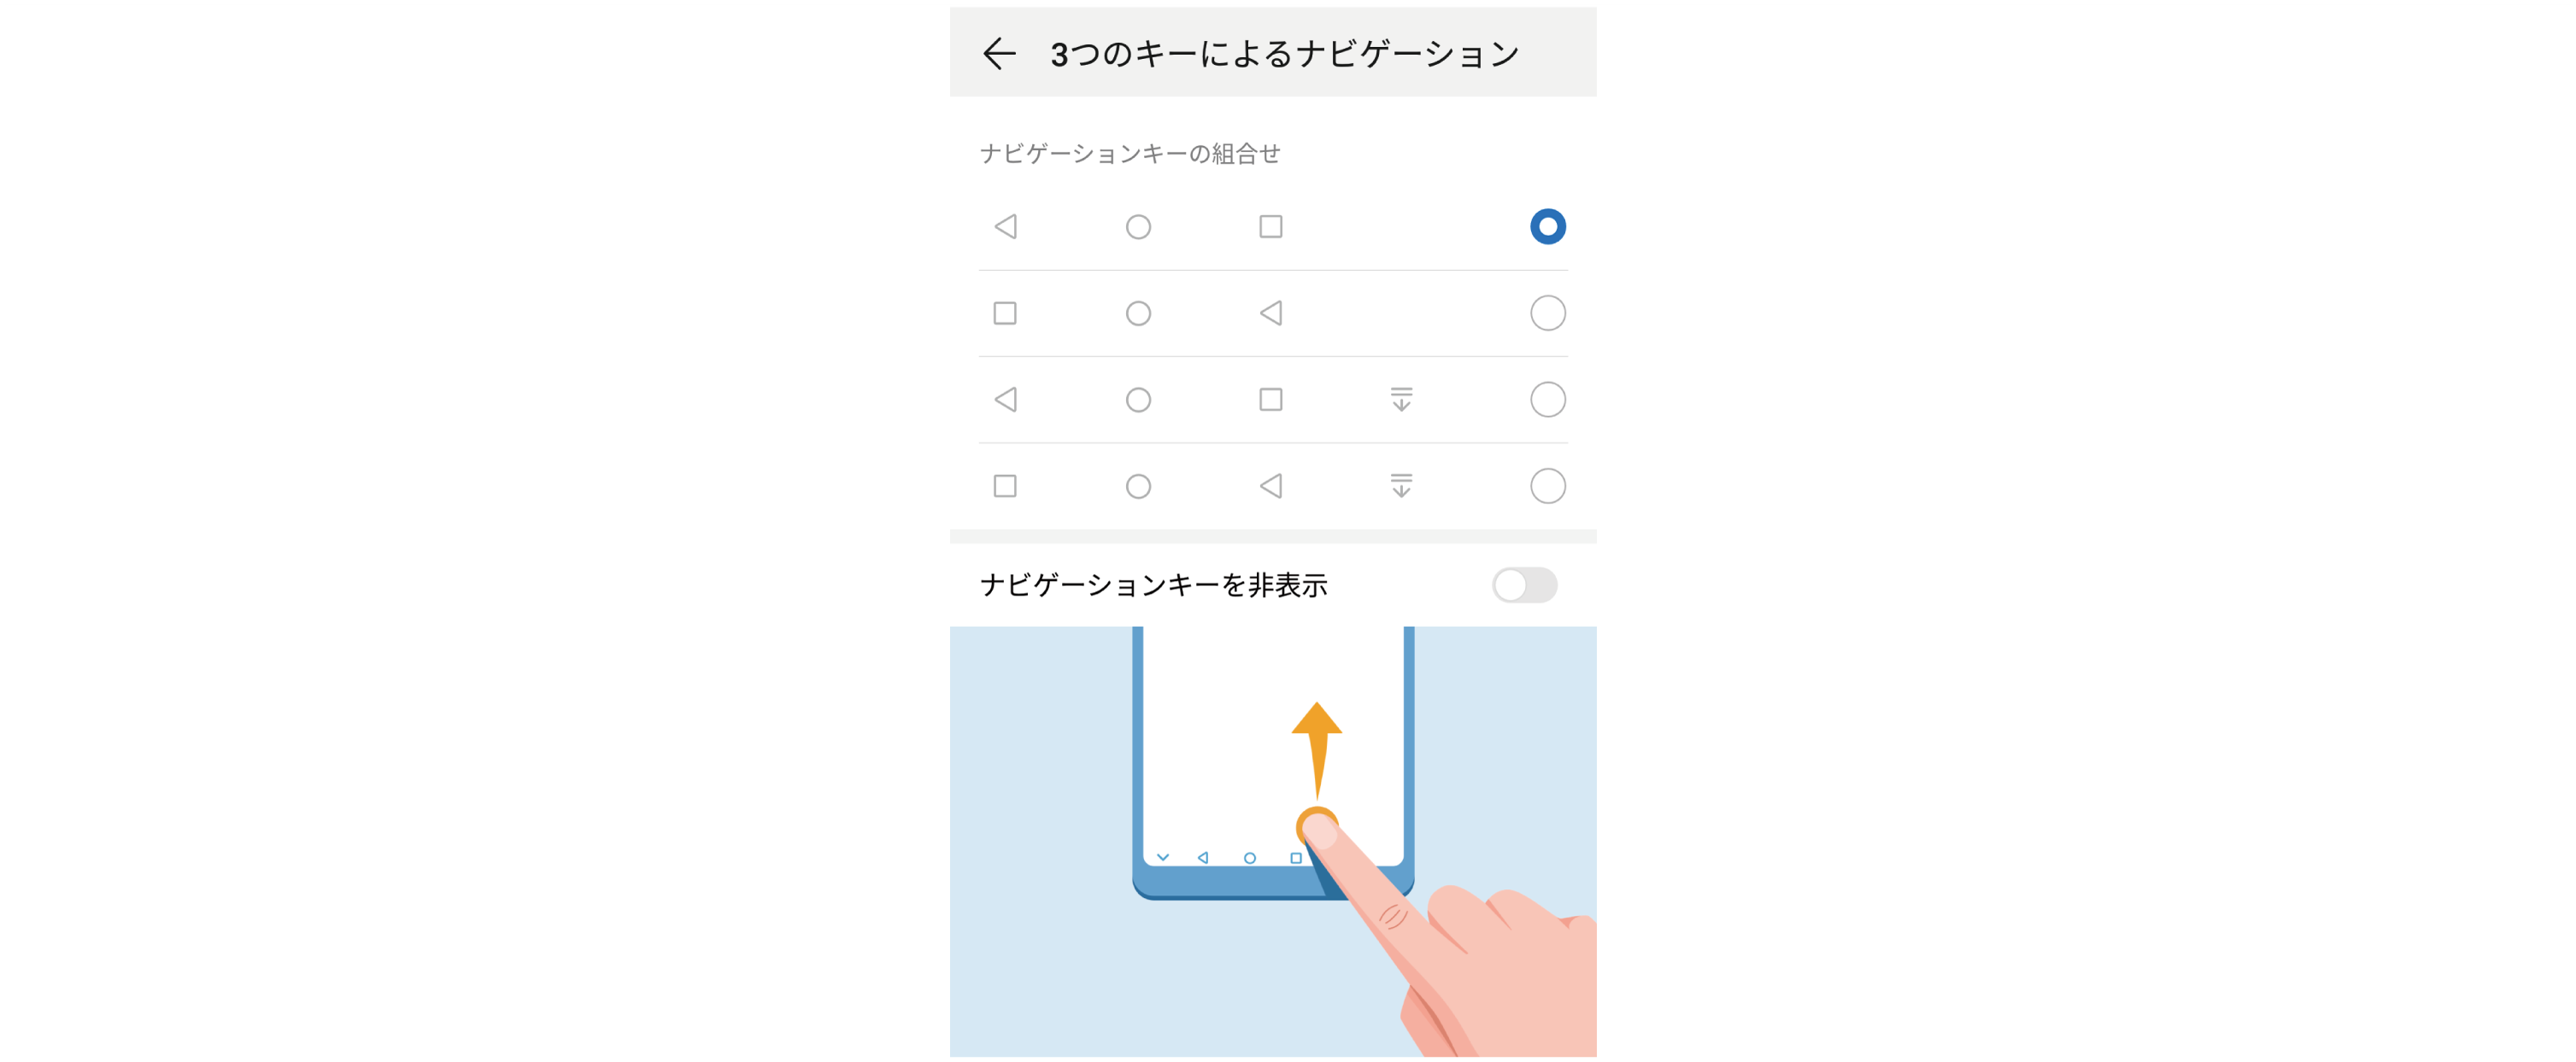 ナビゲーションバーレイアウトの設定 仮想ナビゲーションバーボタンの組み合わせの選択方法 ナビゲーションバーを非表示にする方法 Huawei サポート 日本